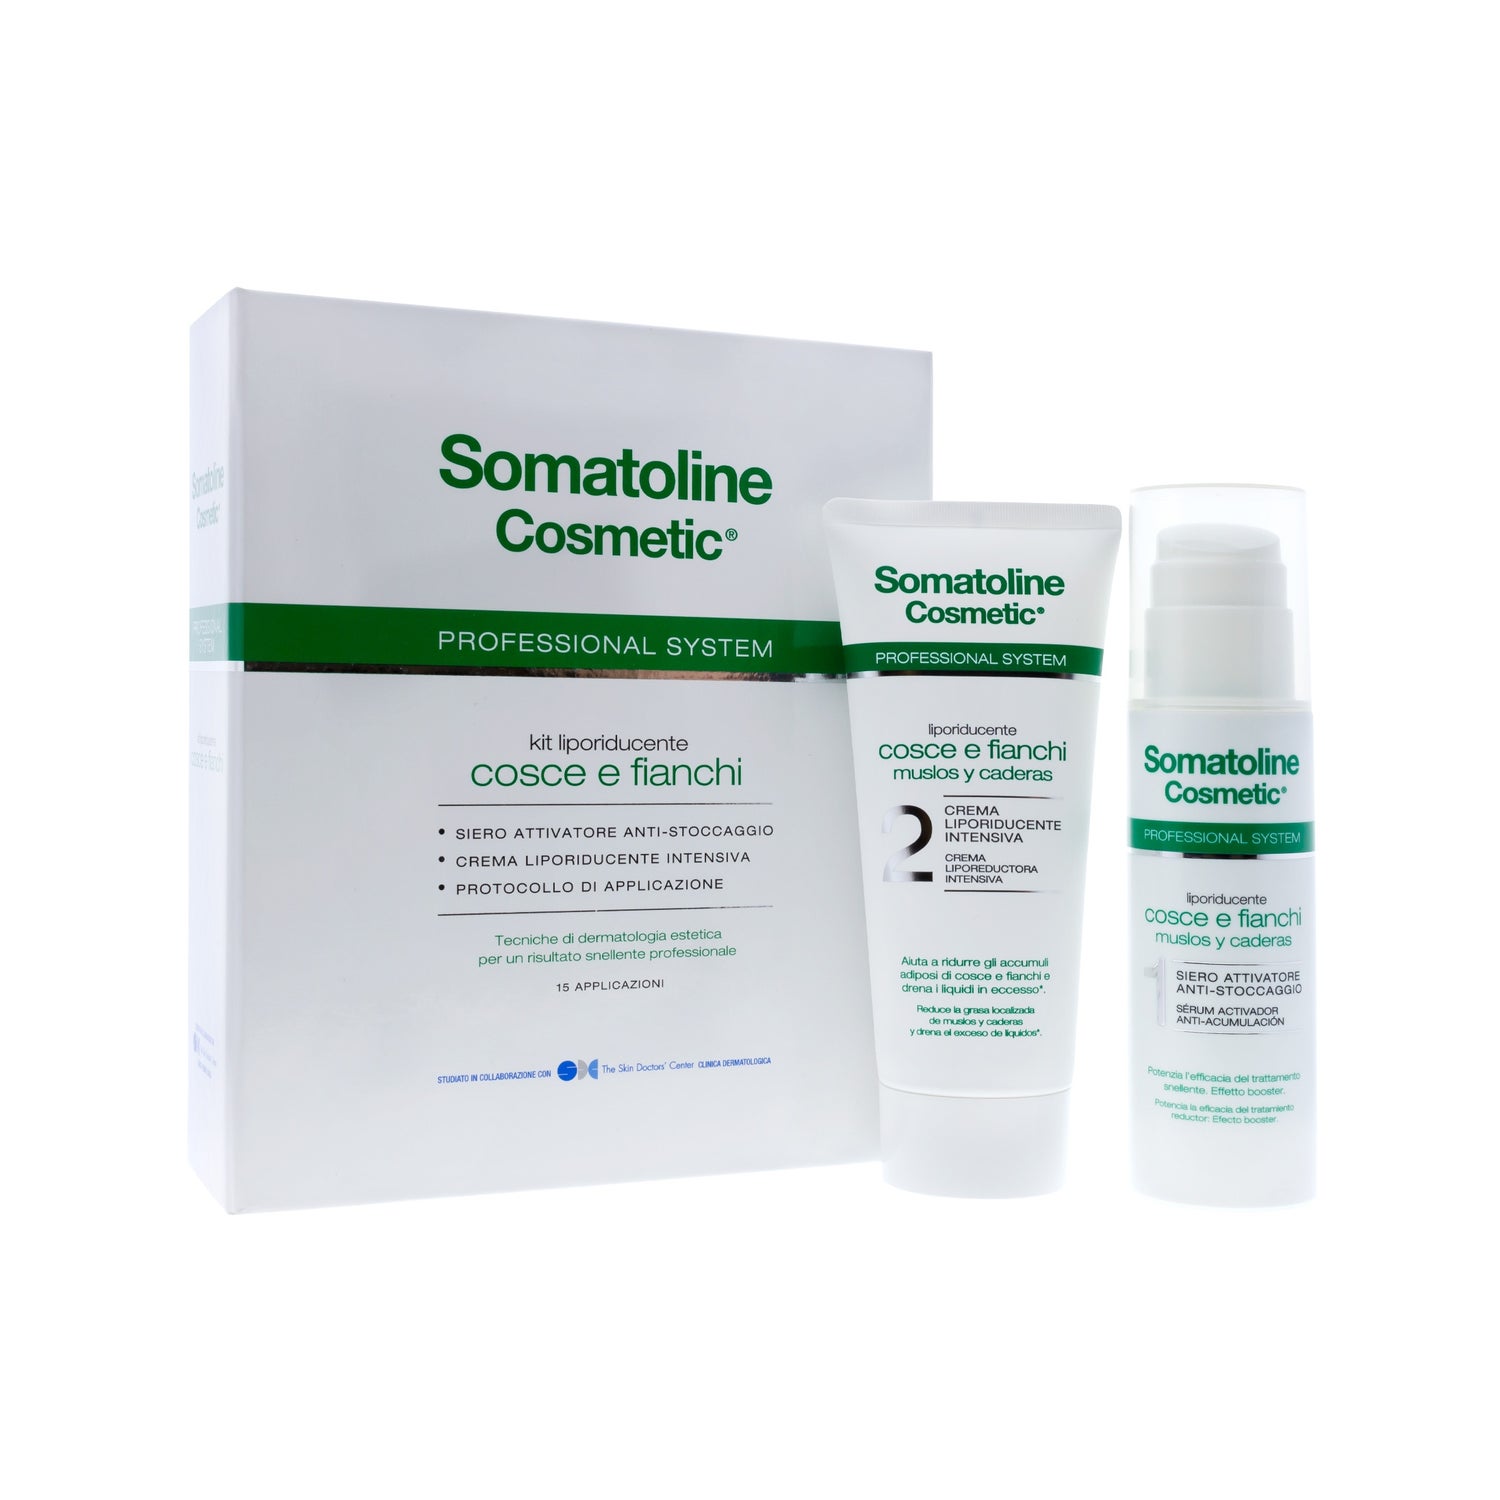 somatoline cosmetic professional system muslos y caderas 15 aplicaciones